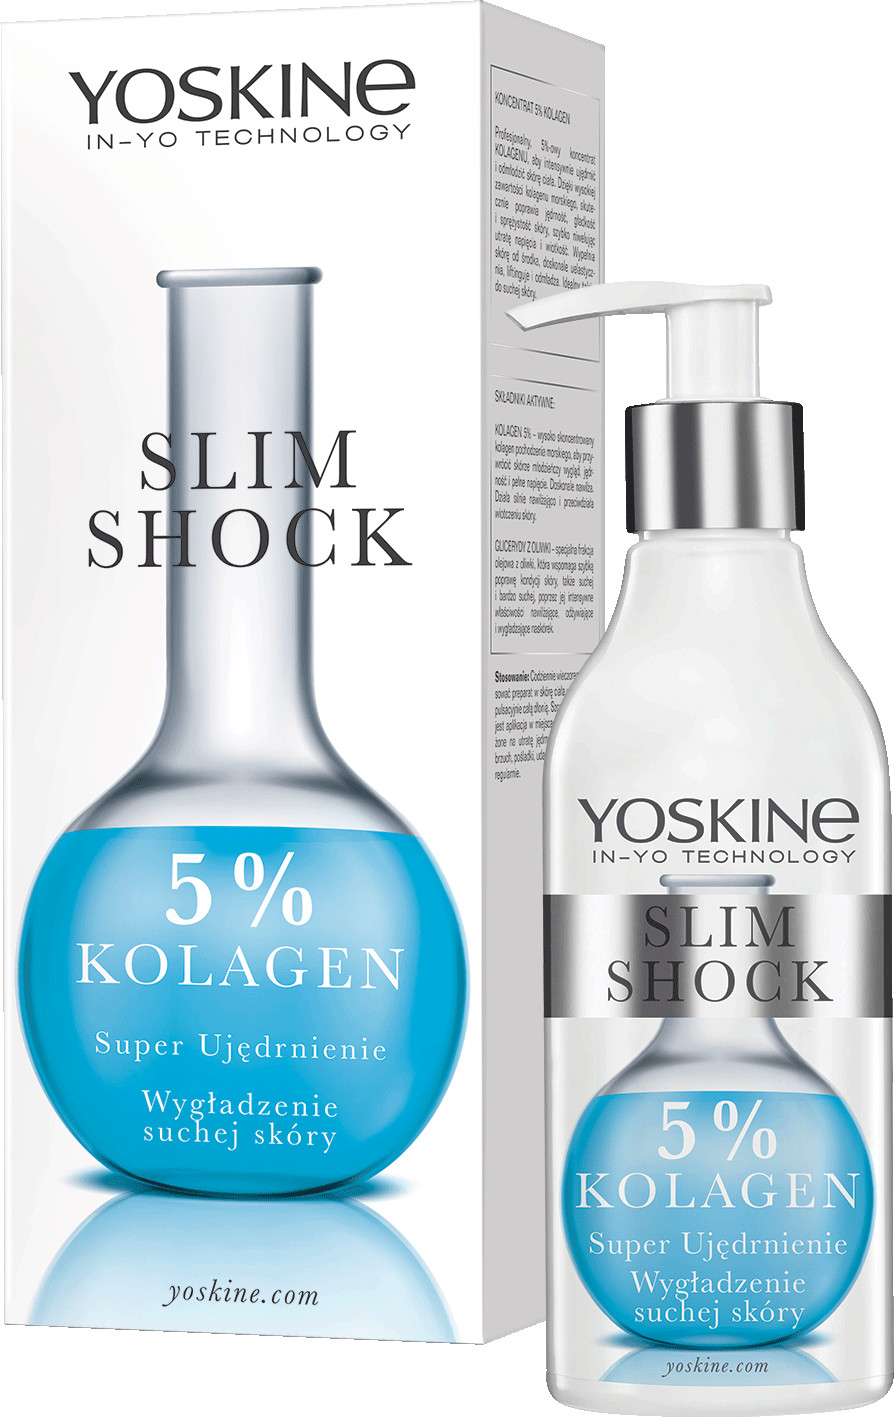 Yoskine Slim Shock ZABIEG KOLAGEN UJĘDRNIENIE 010214975